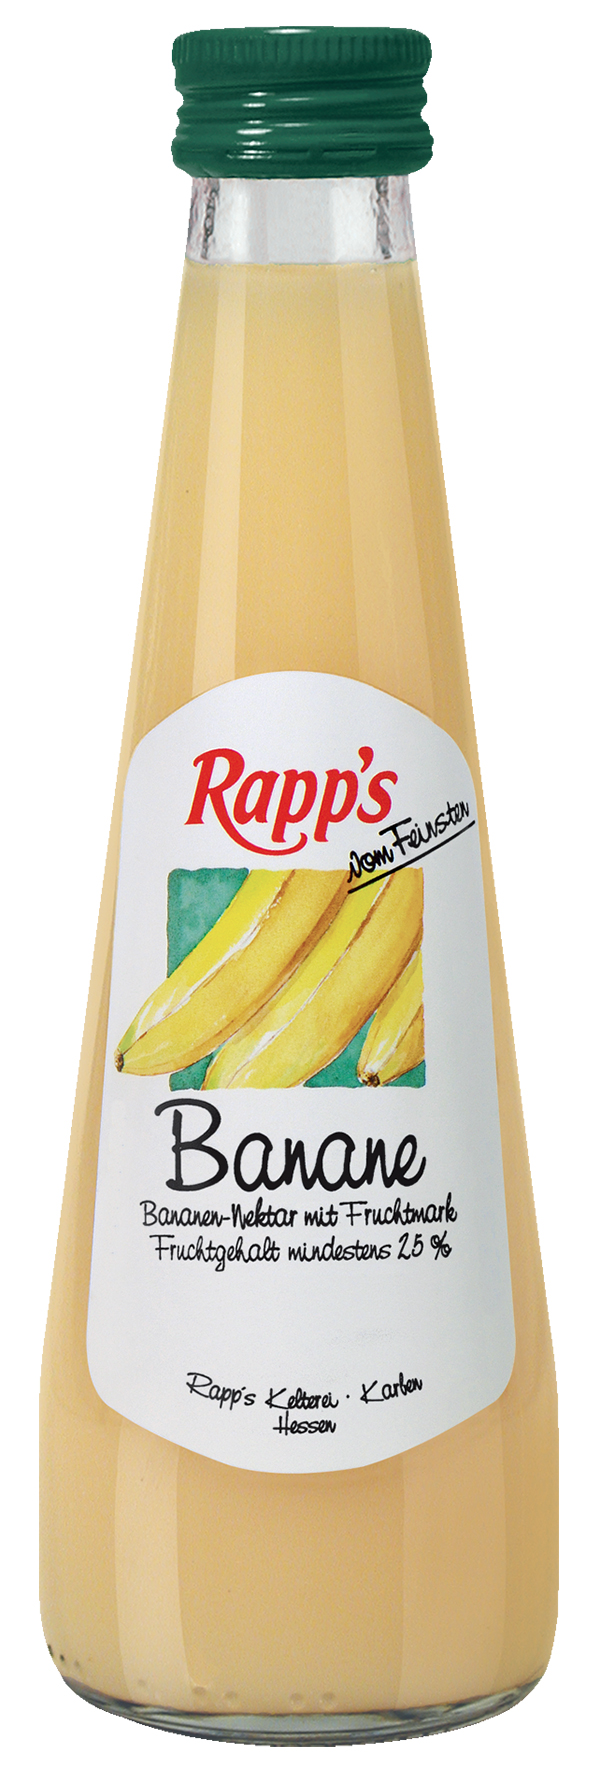 Rapps Banane 24 x 0,2 l (Glas)